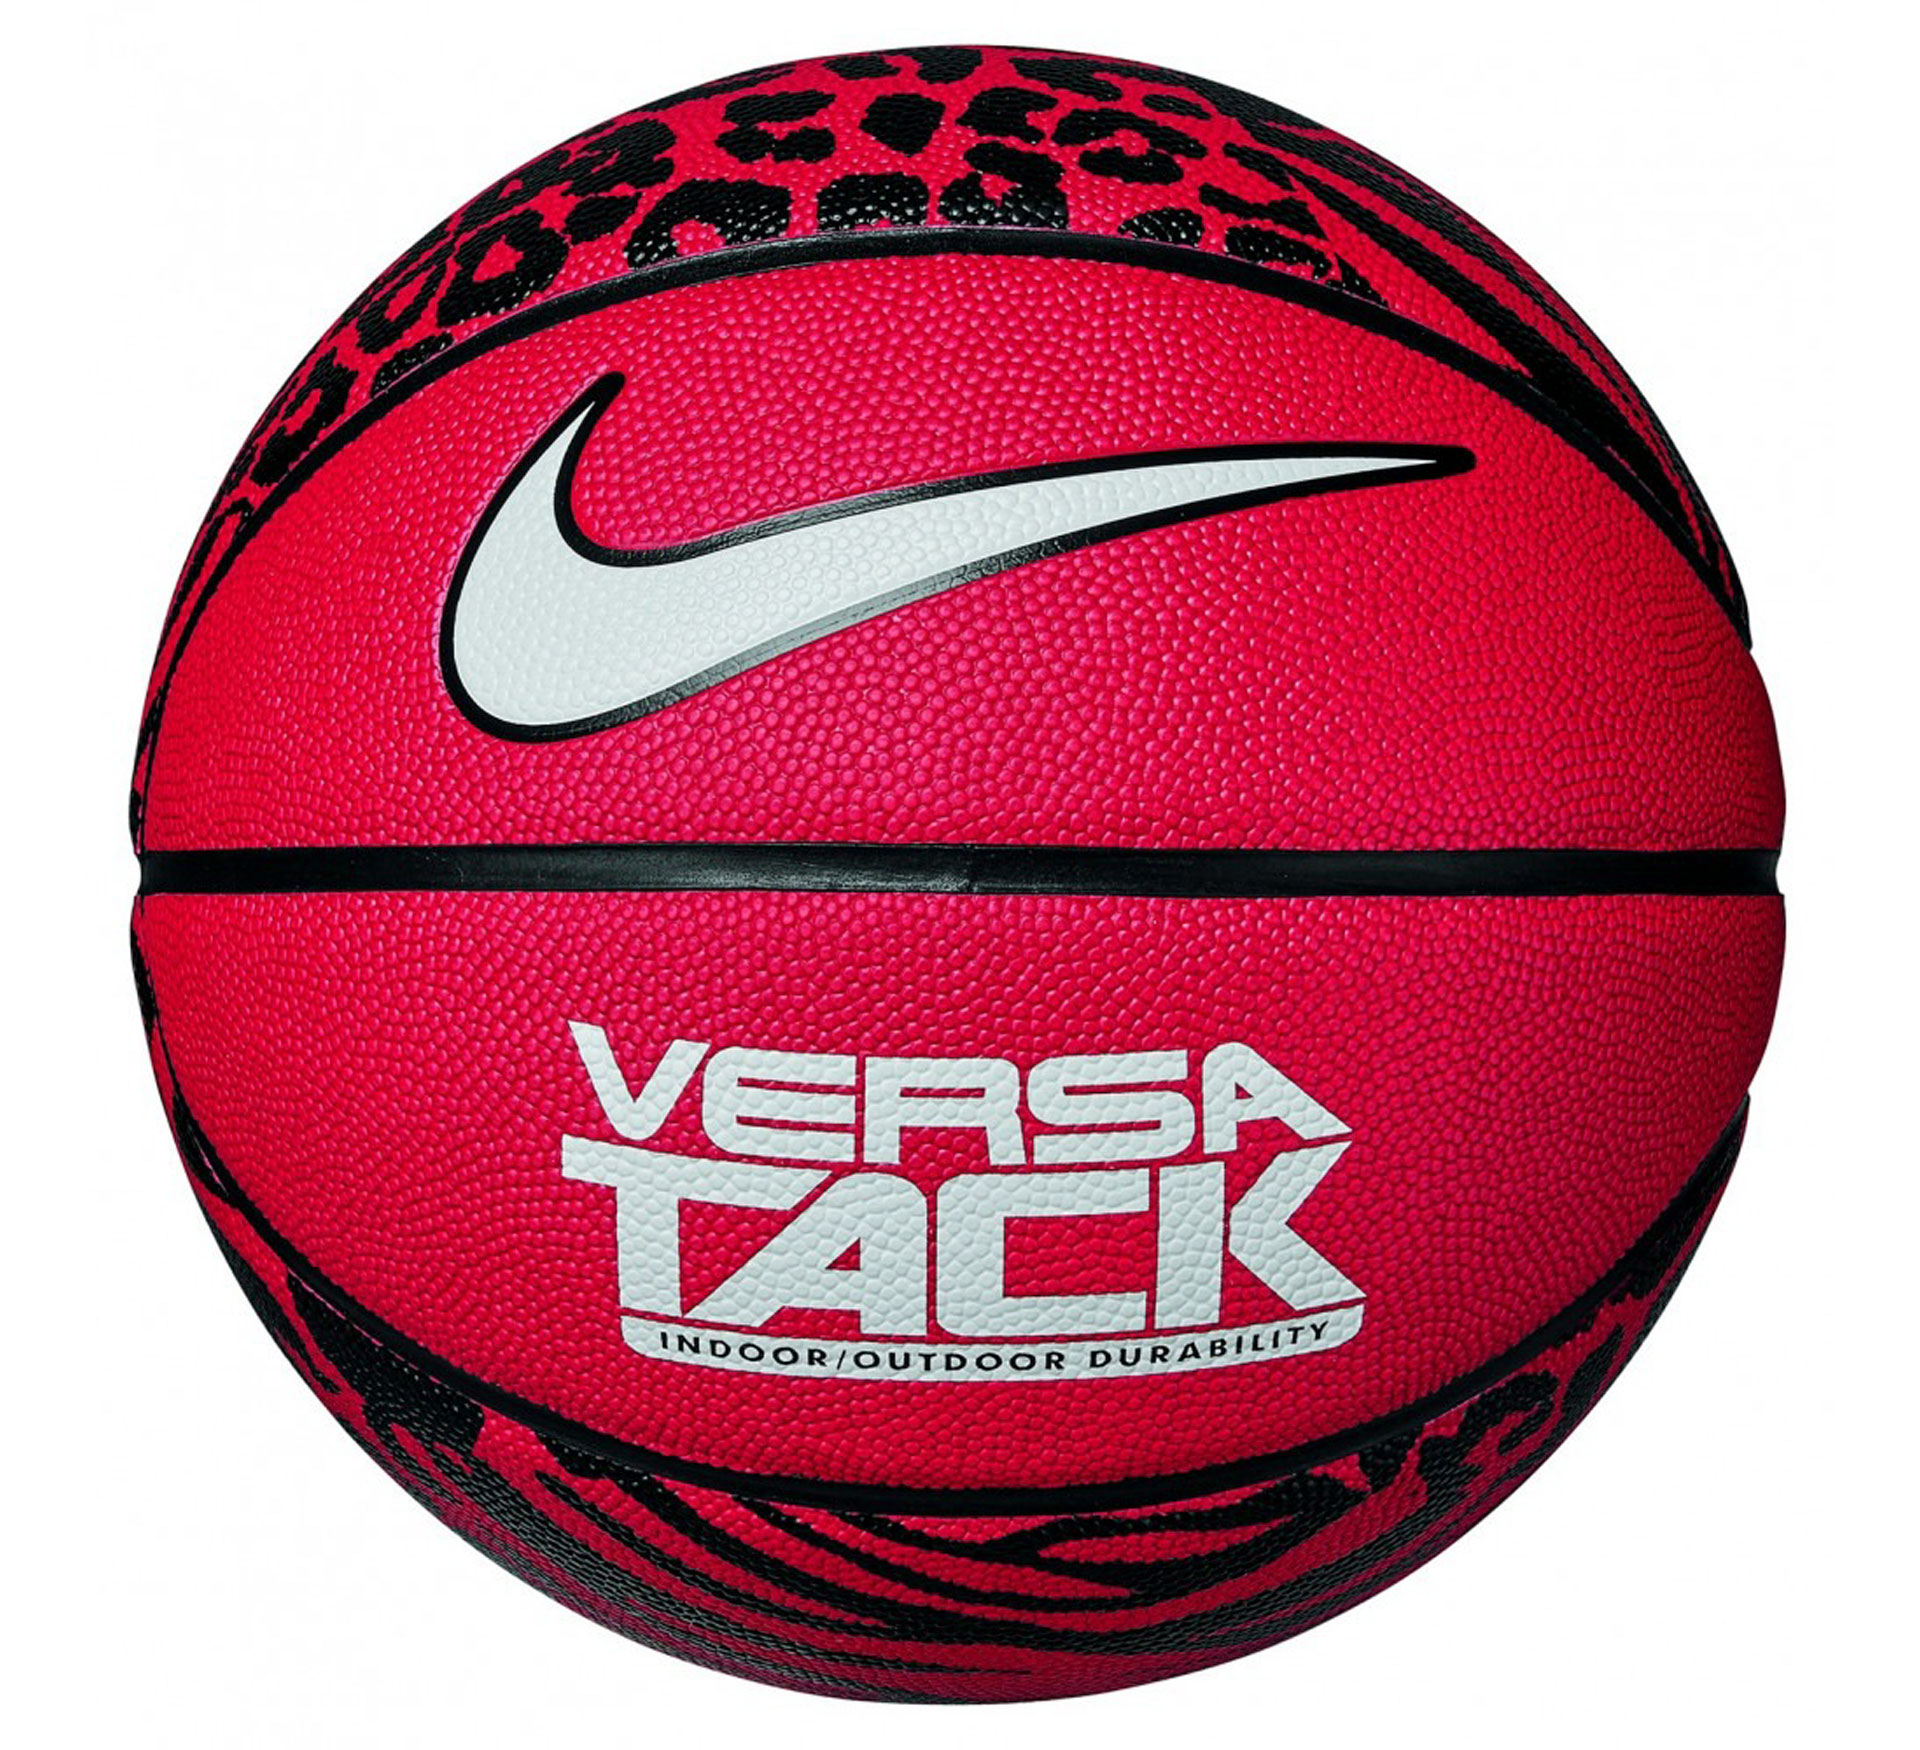 Ballon de basketball Nike Versa Tack 8P